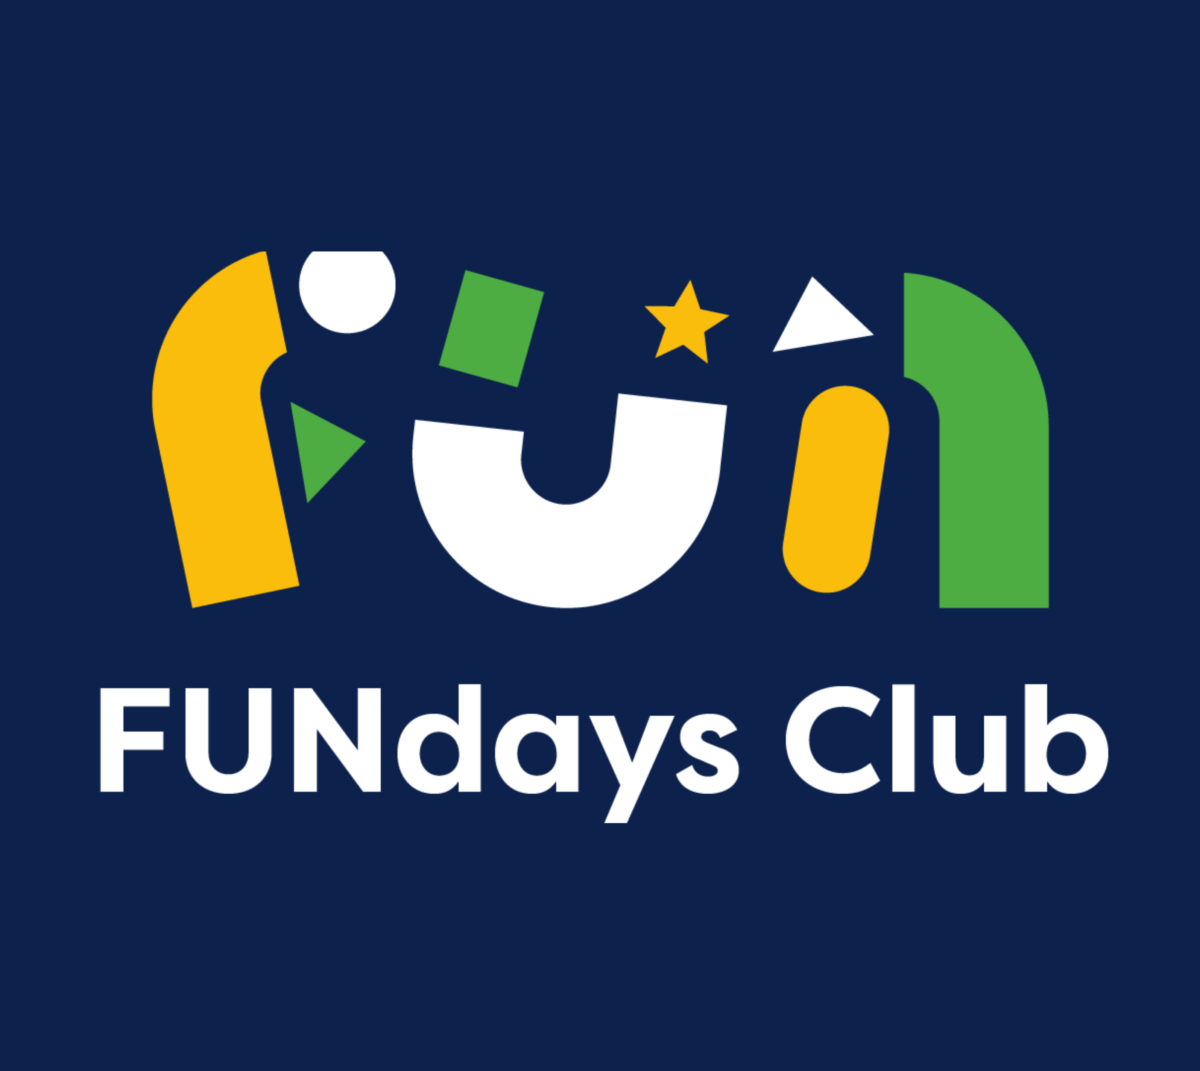 Bring a friend to FUNdays Club